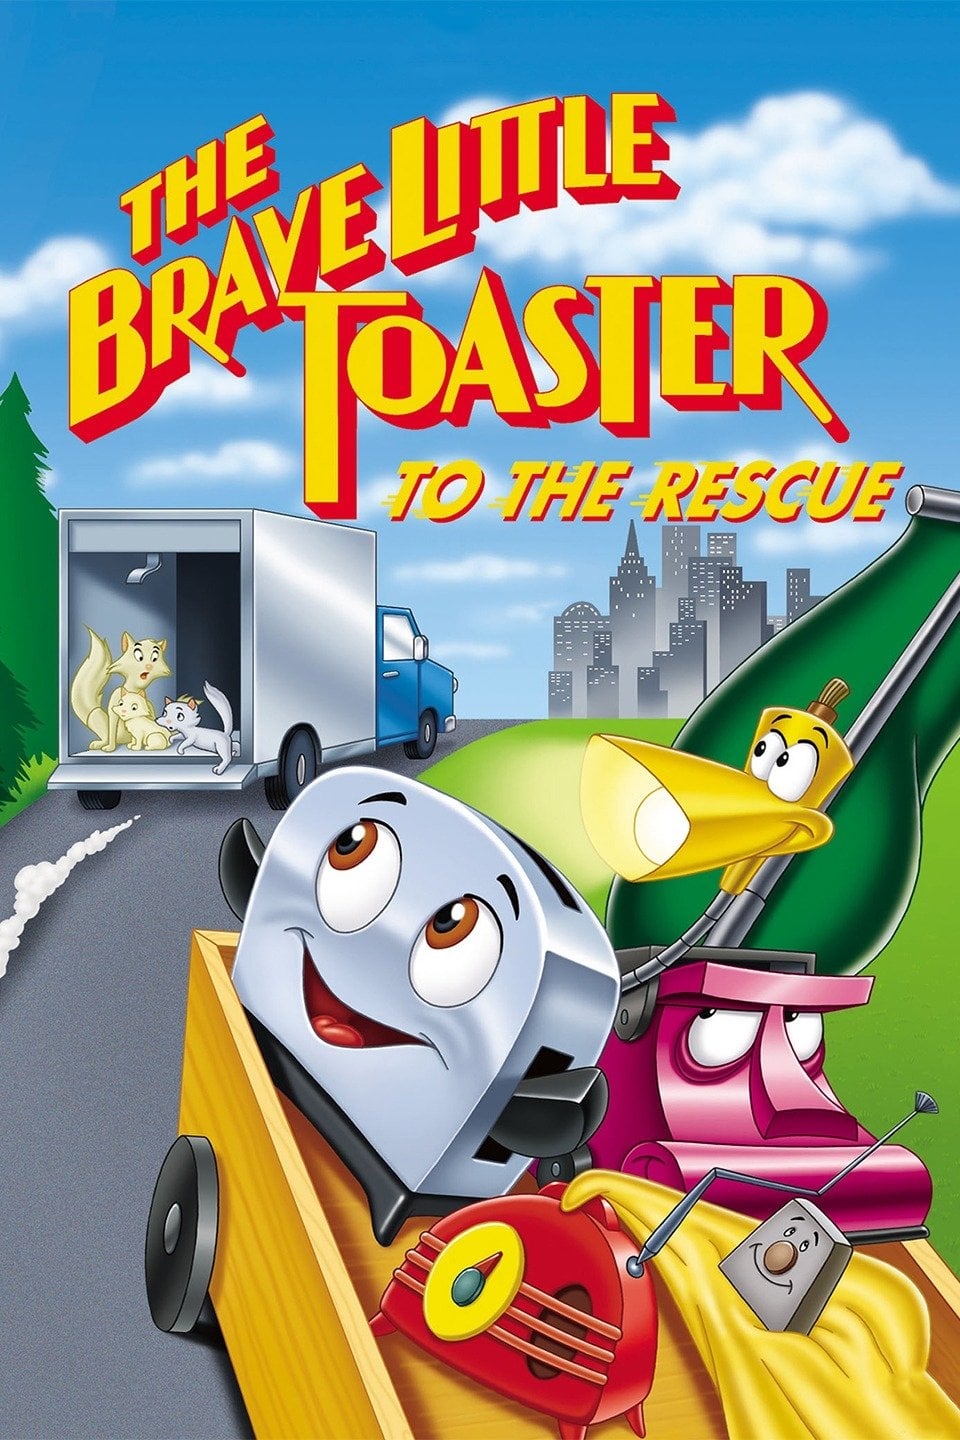 Der tapfere kleine Toaster als Retter in der Not (1997)